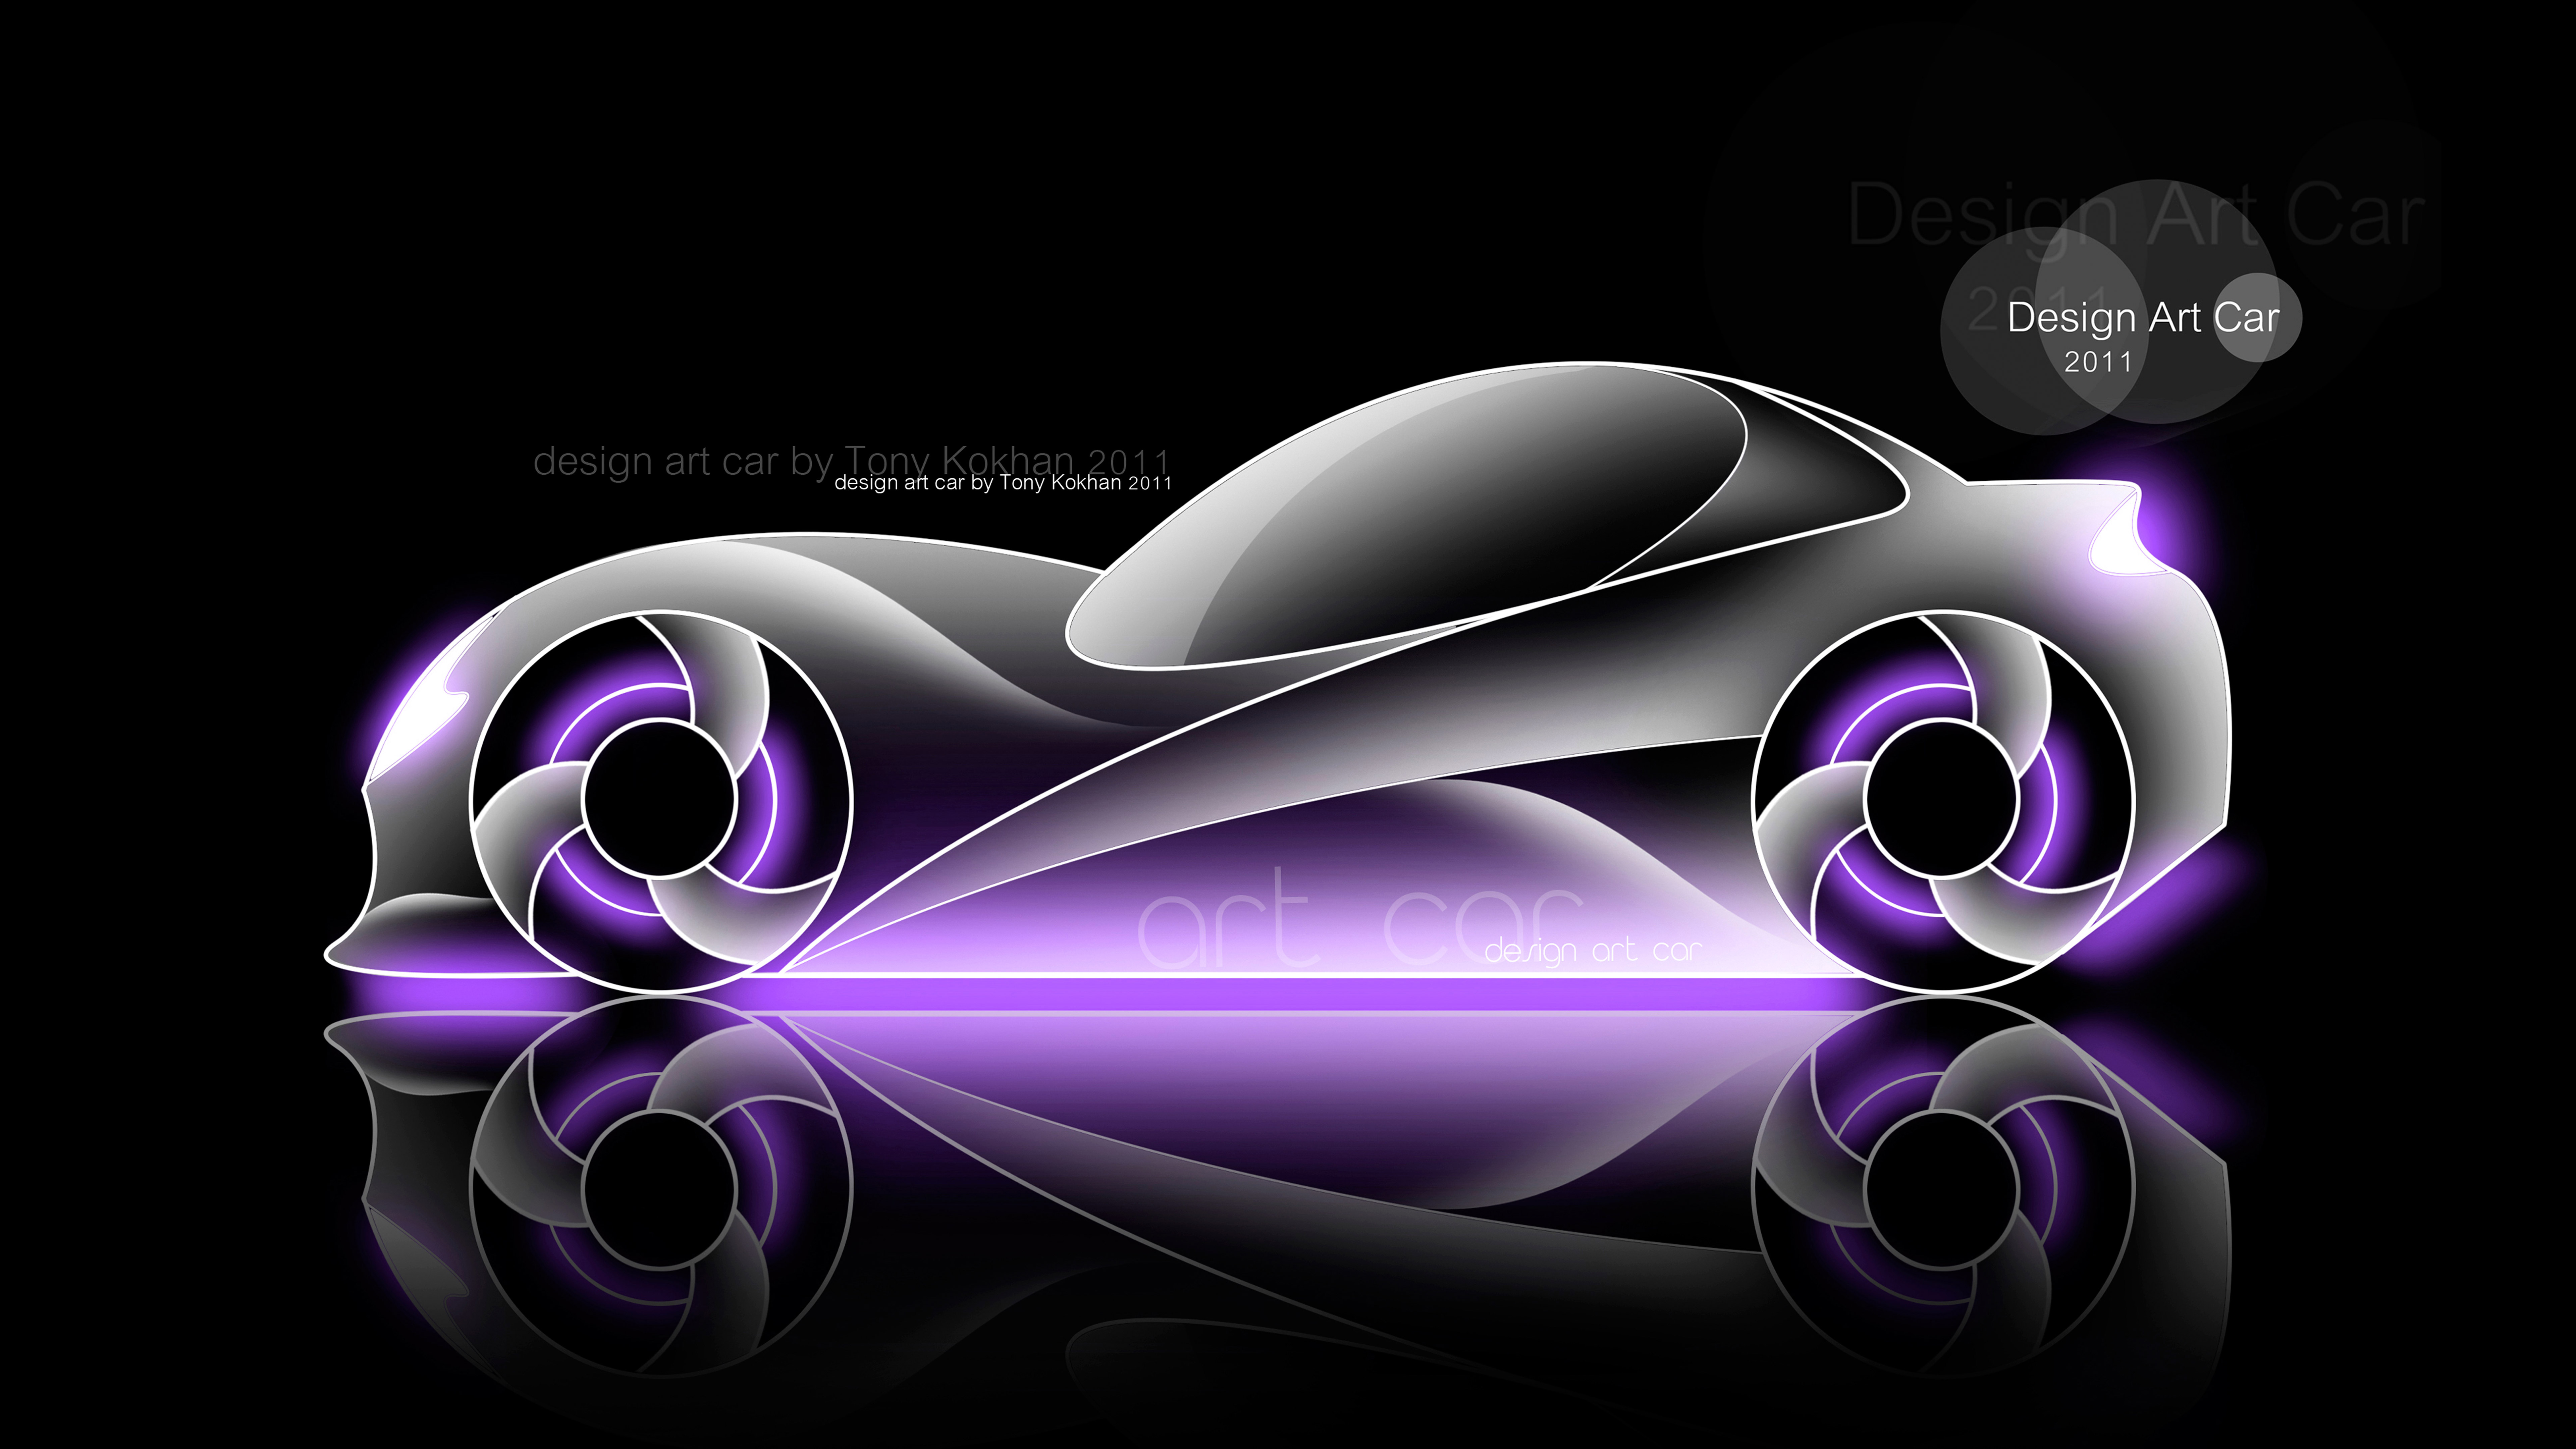 Design-Art-Car-TonyStyleDd-LlYyiYa-KhkhCc-DigitAi-SuperPpUuPpiz